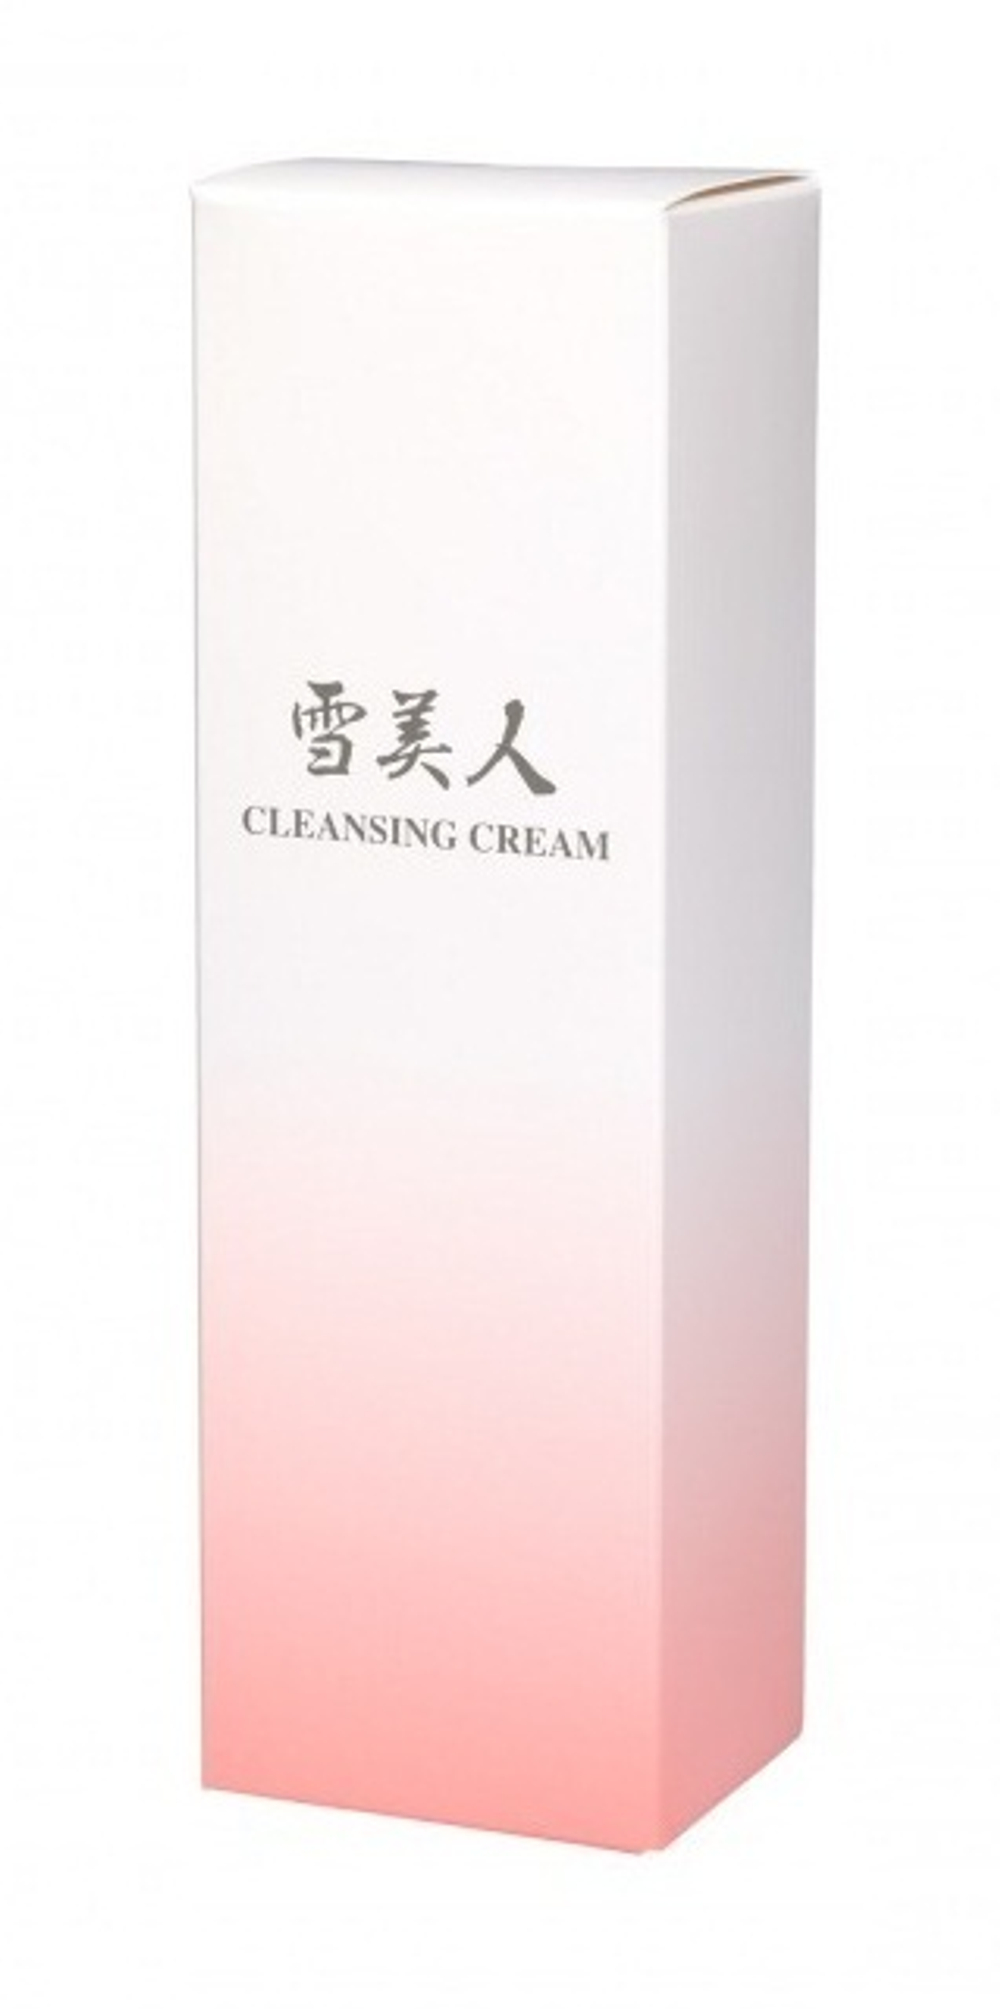 JUKOHBI Очищающий плацентарный крем Cleansing Cream, 120 г